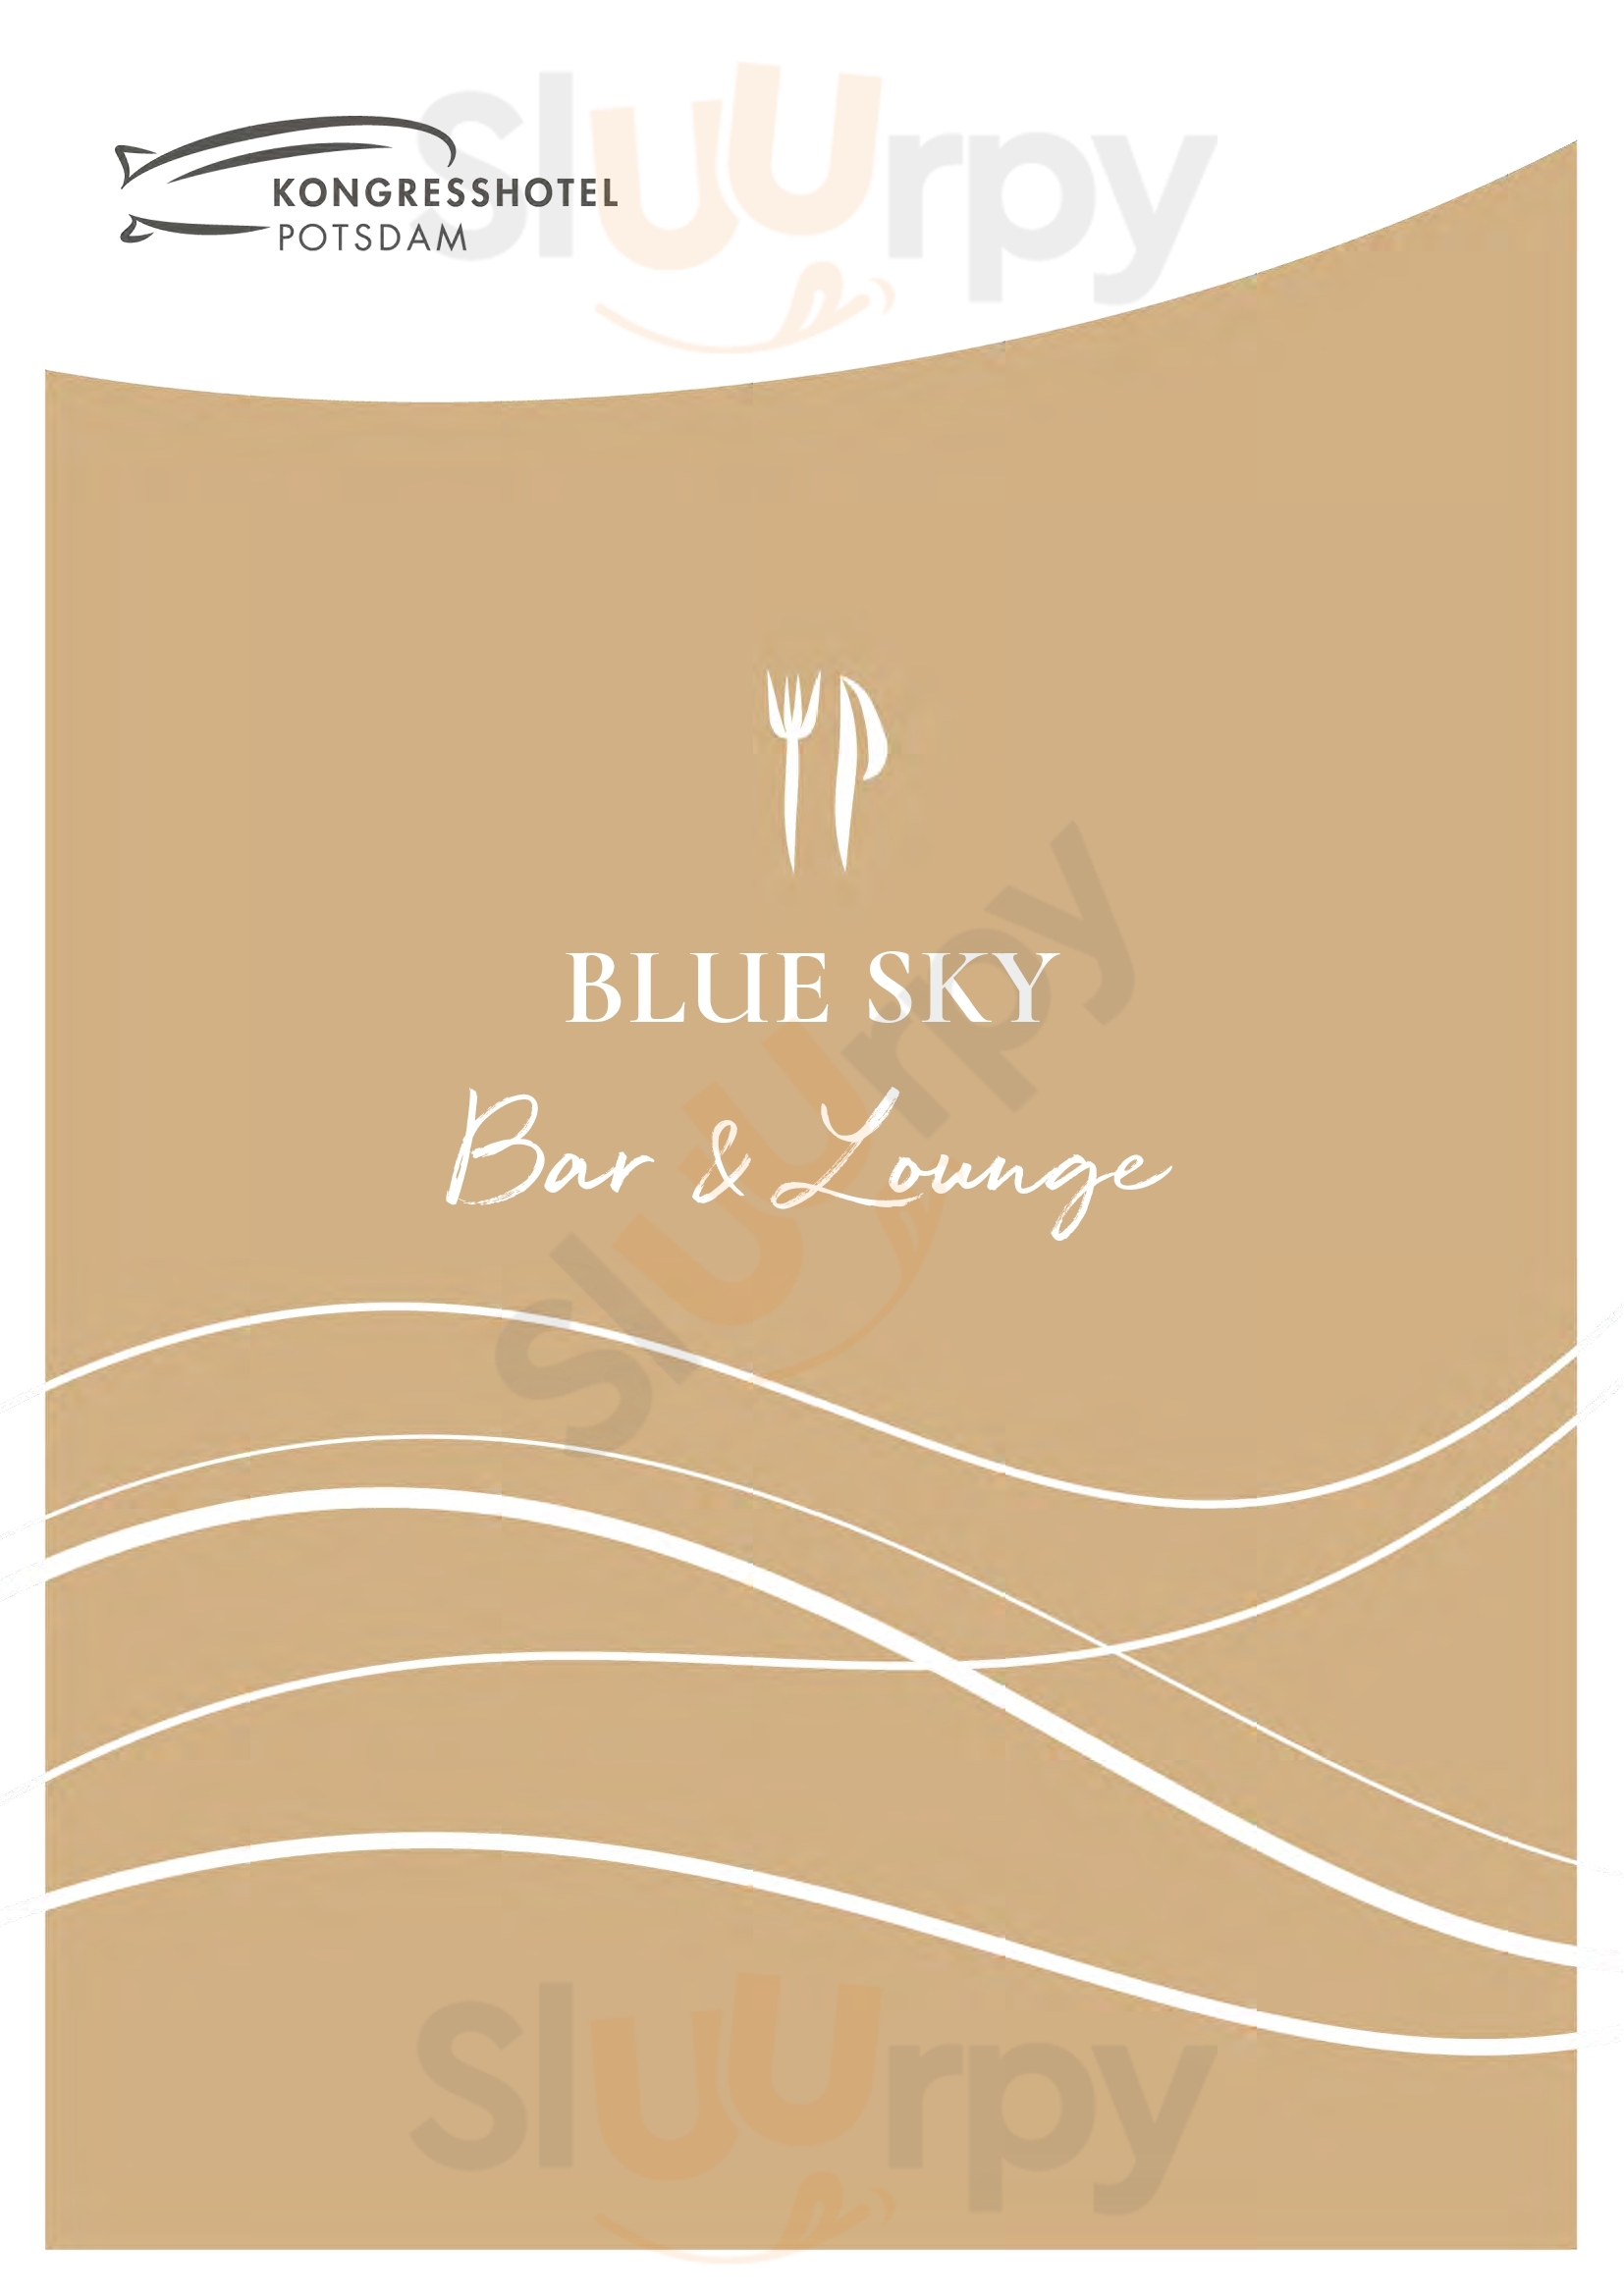 Blue Sky Bar & Lounge Potsdam Menu - 1